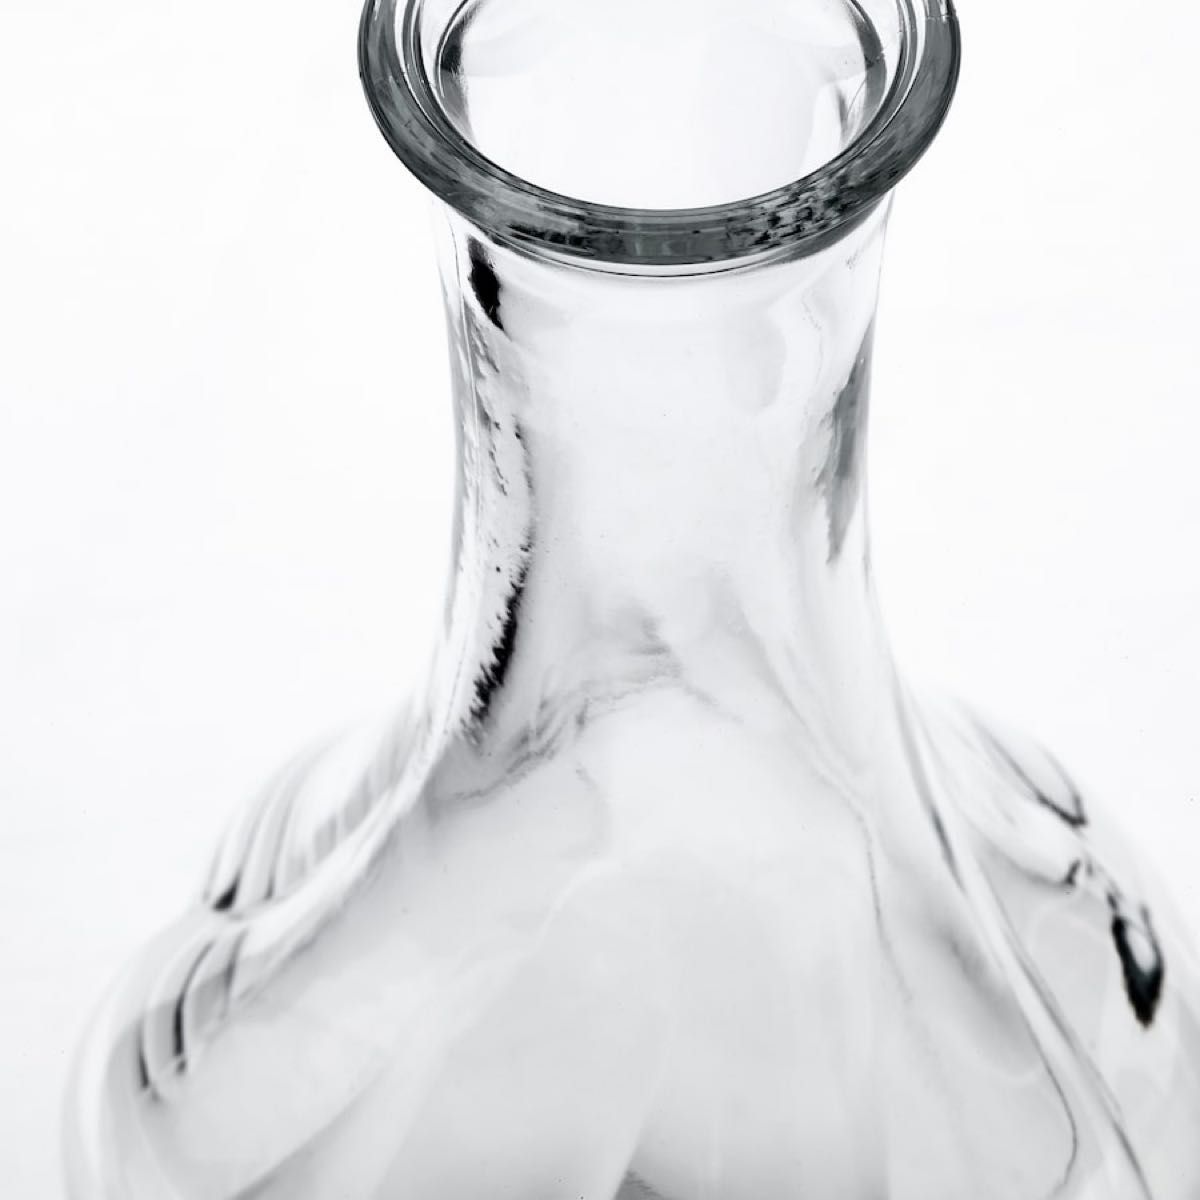 【新品・未使用】 イケア フラワーベース 人気の2種セット ヴィリエスタルク  スティルレーン  シックな花瓶です。 花器